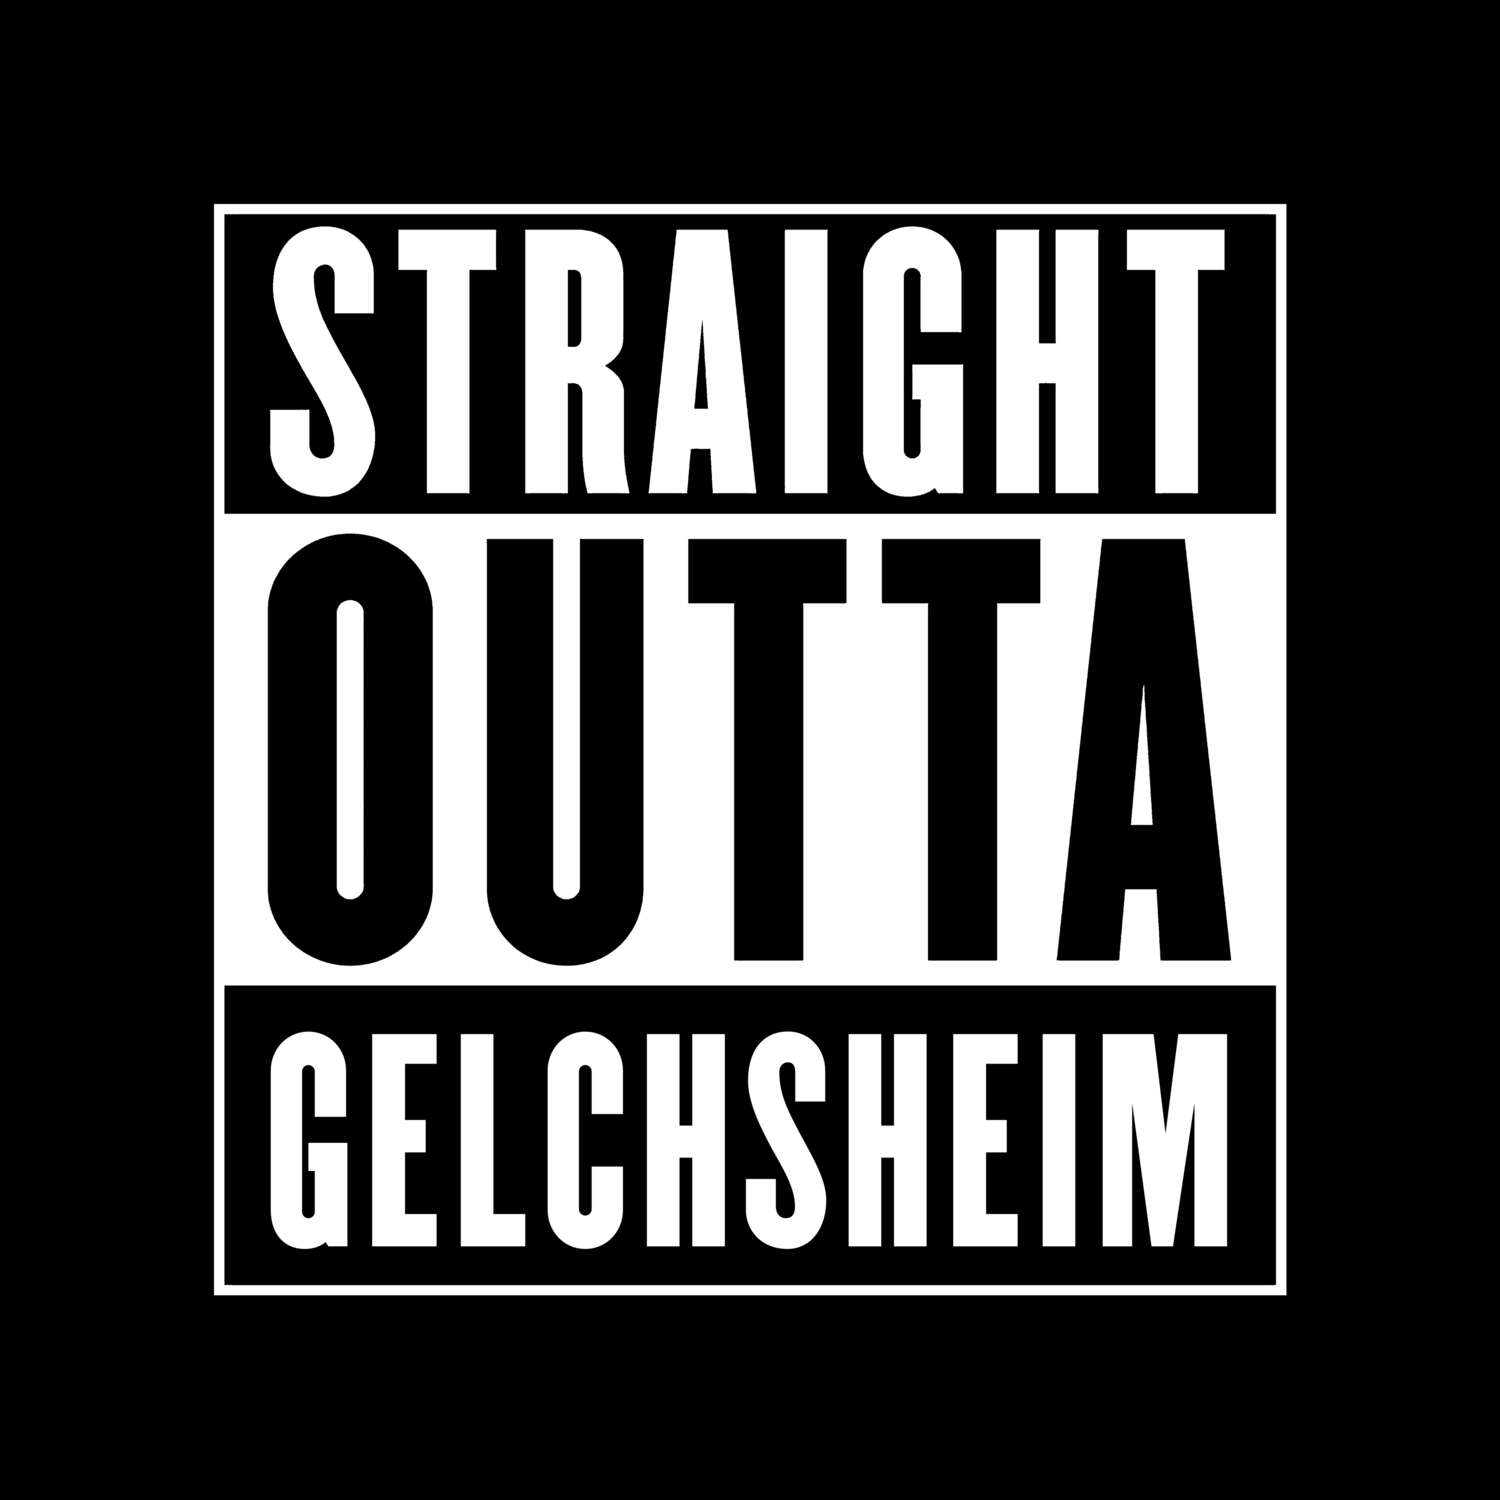 Gelchsheim T-Shirt »Straight Outta«